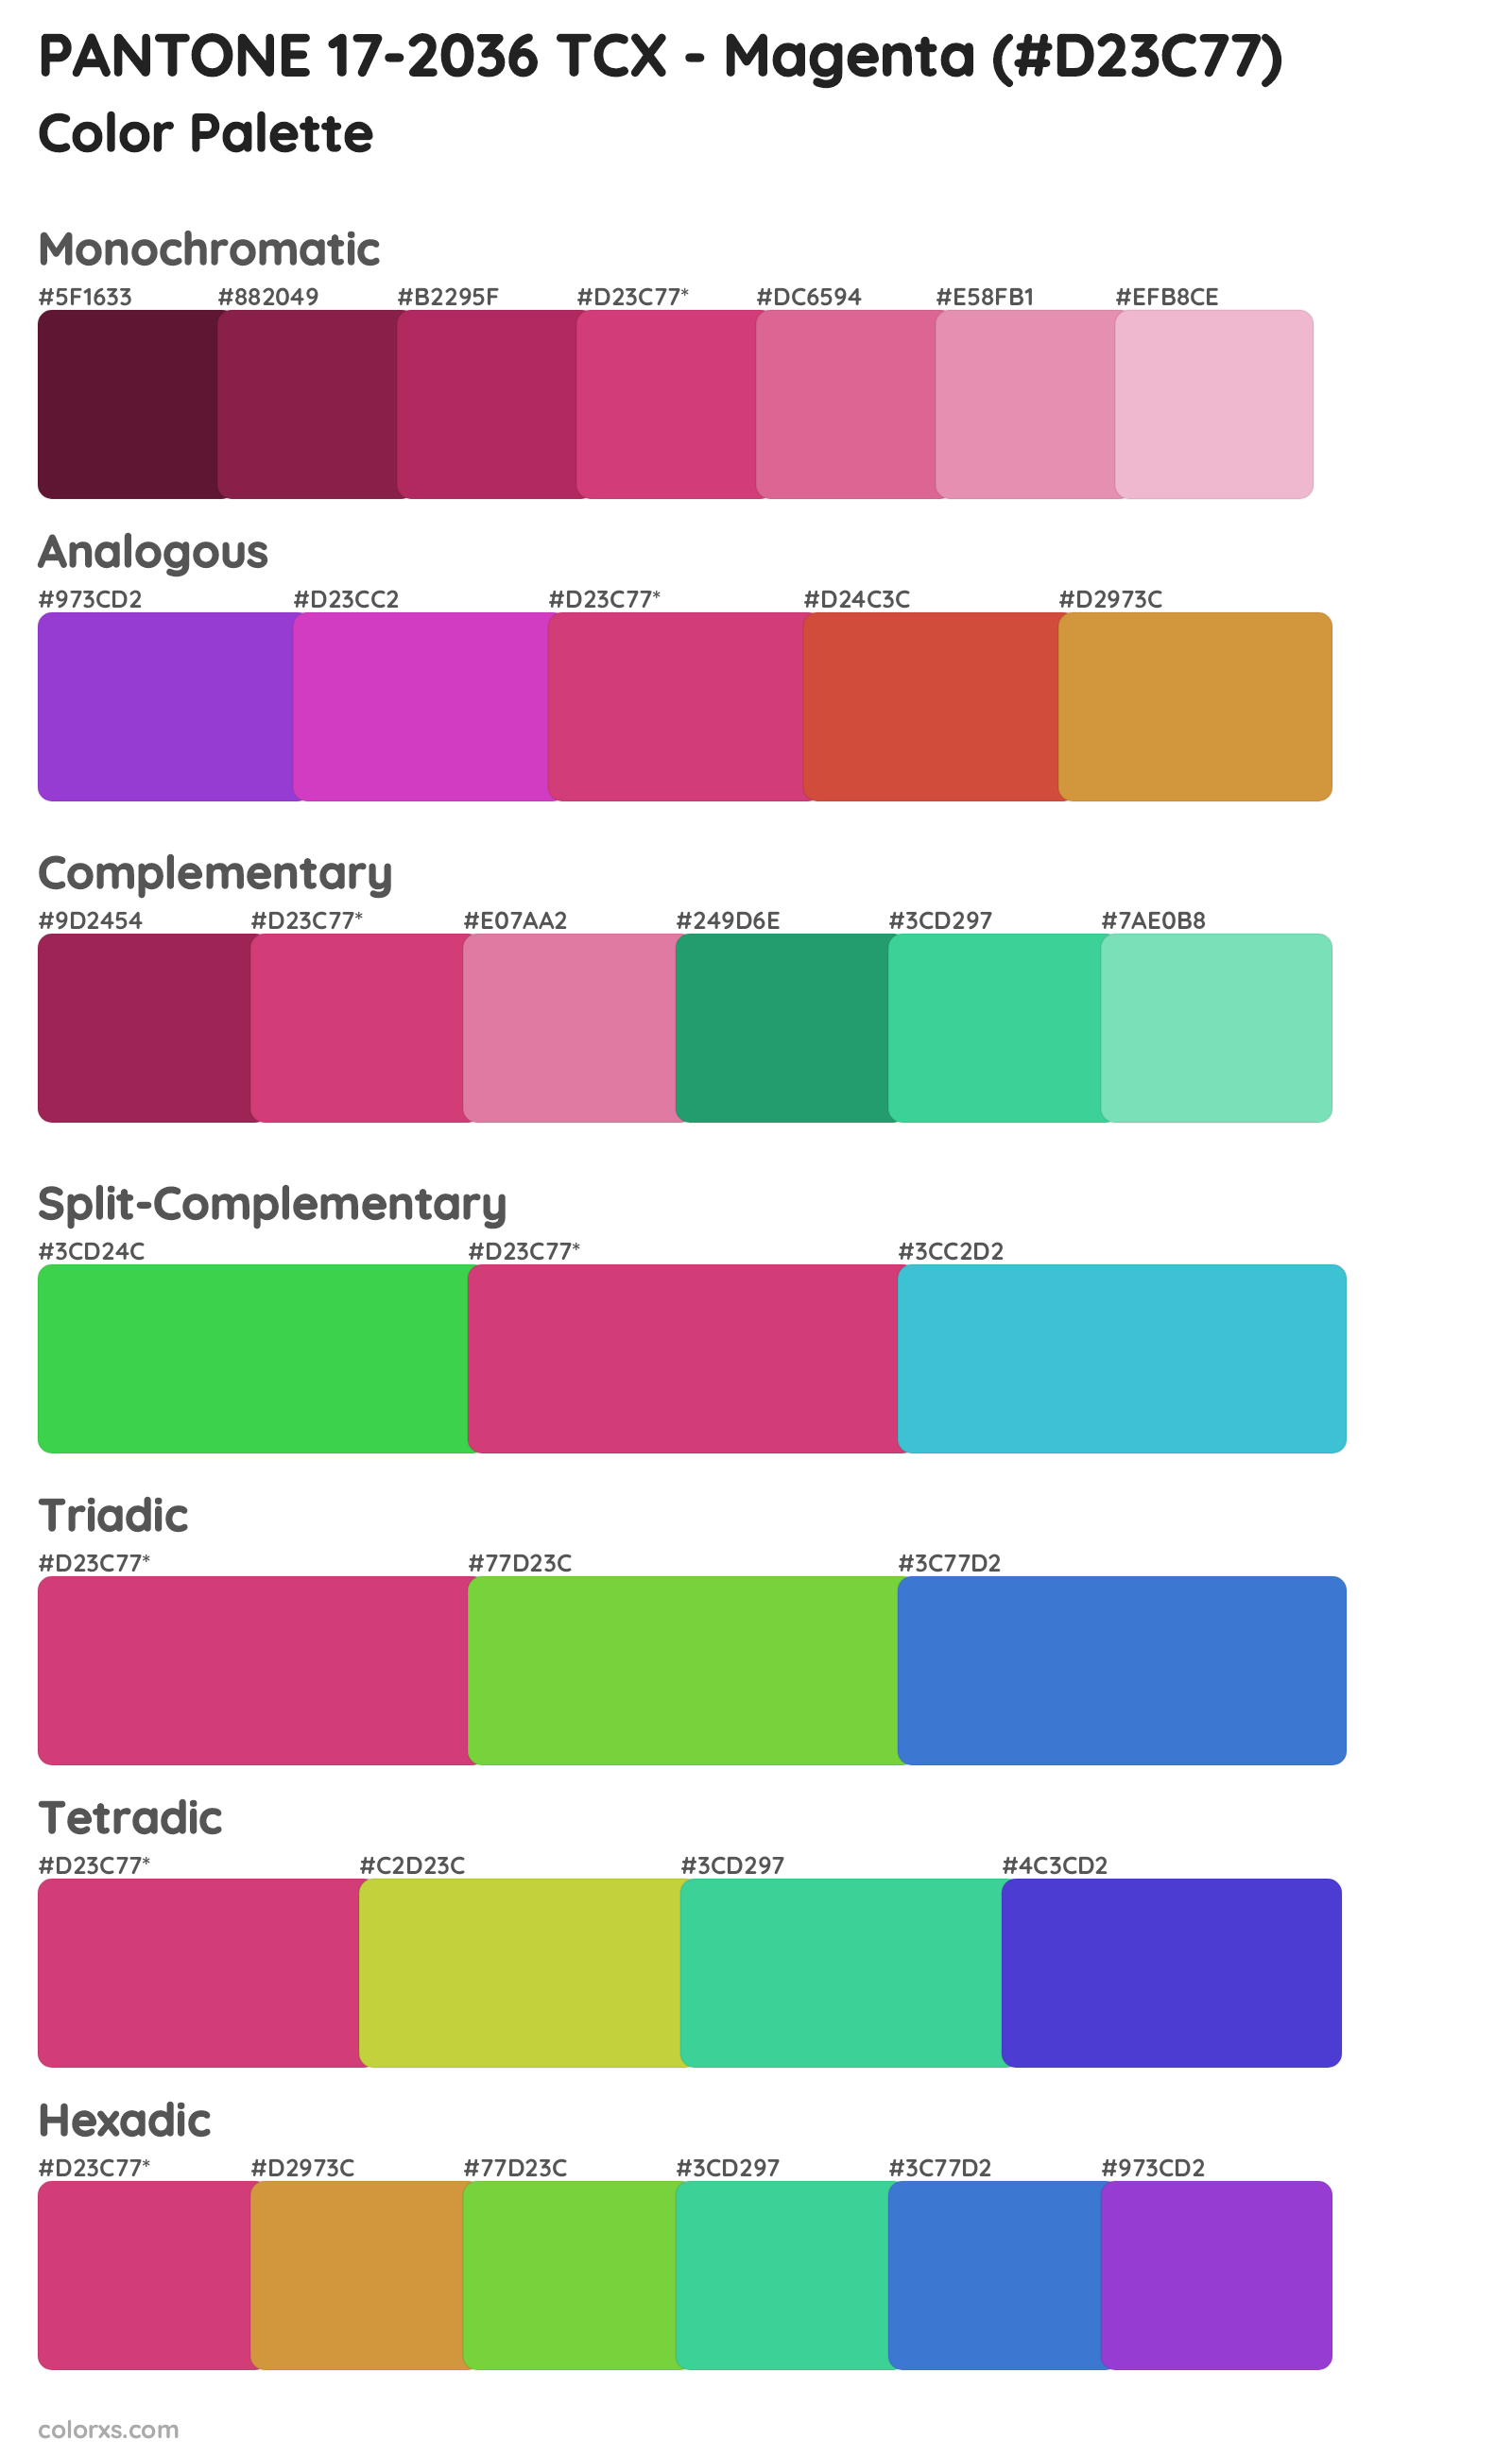 PANTONE 17-2036 TCX - Magenta Color Scheme Palettes